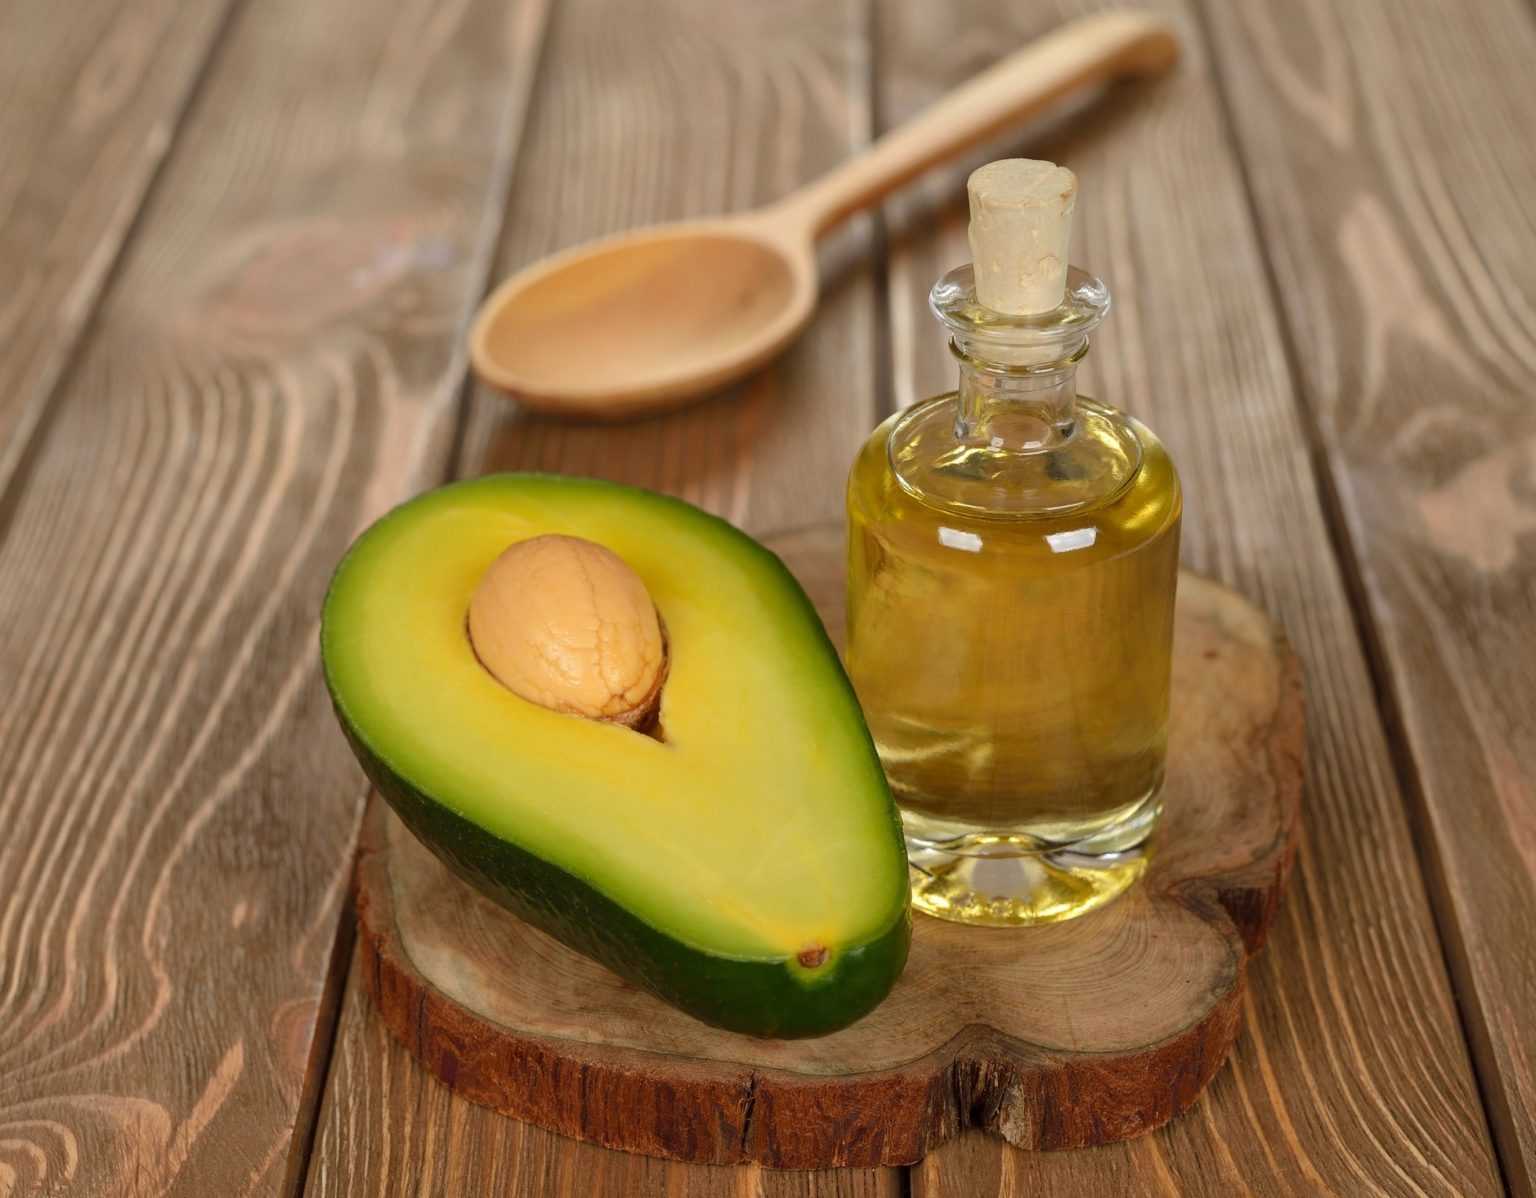 Масло авокадо - свойства и применение для лица, для волос, польза и рецепты — секреты красоток